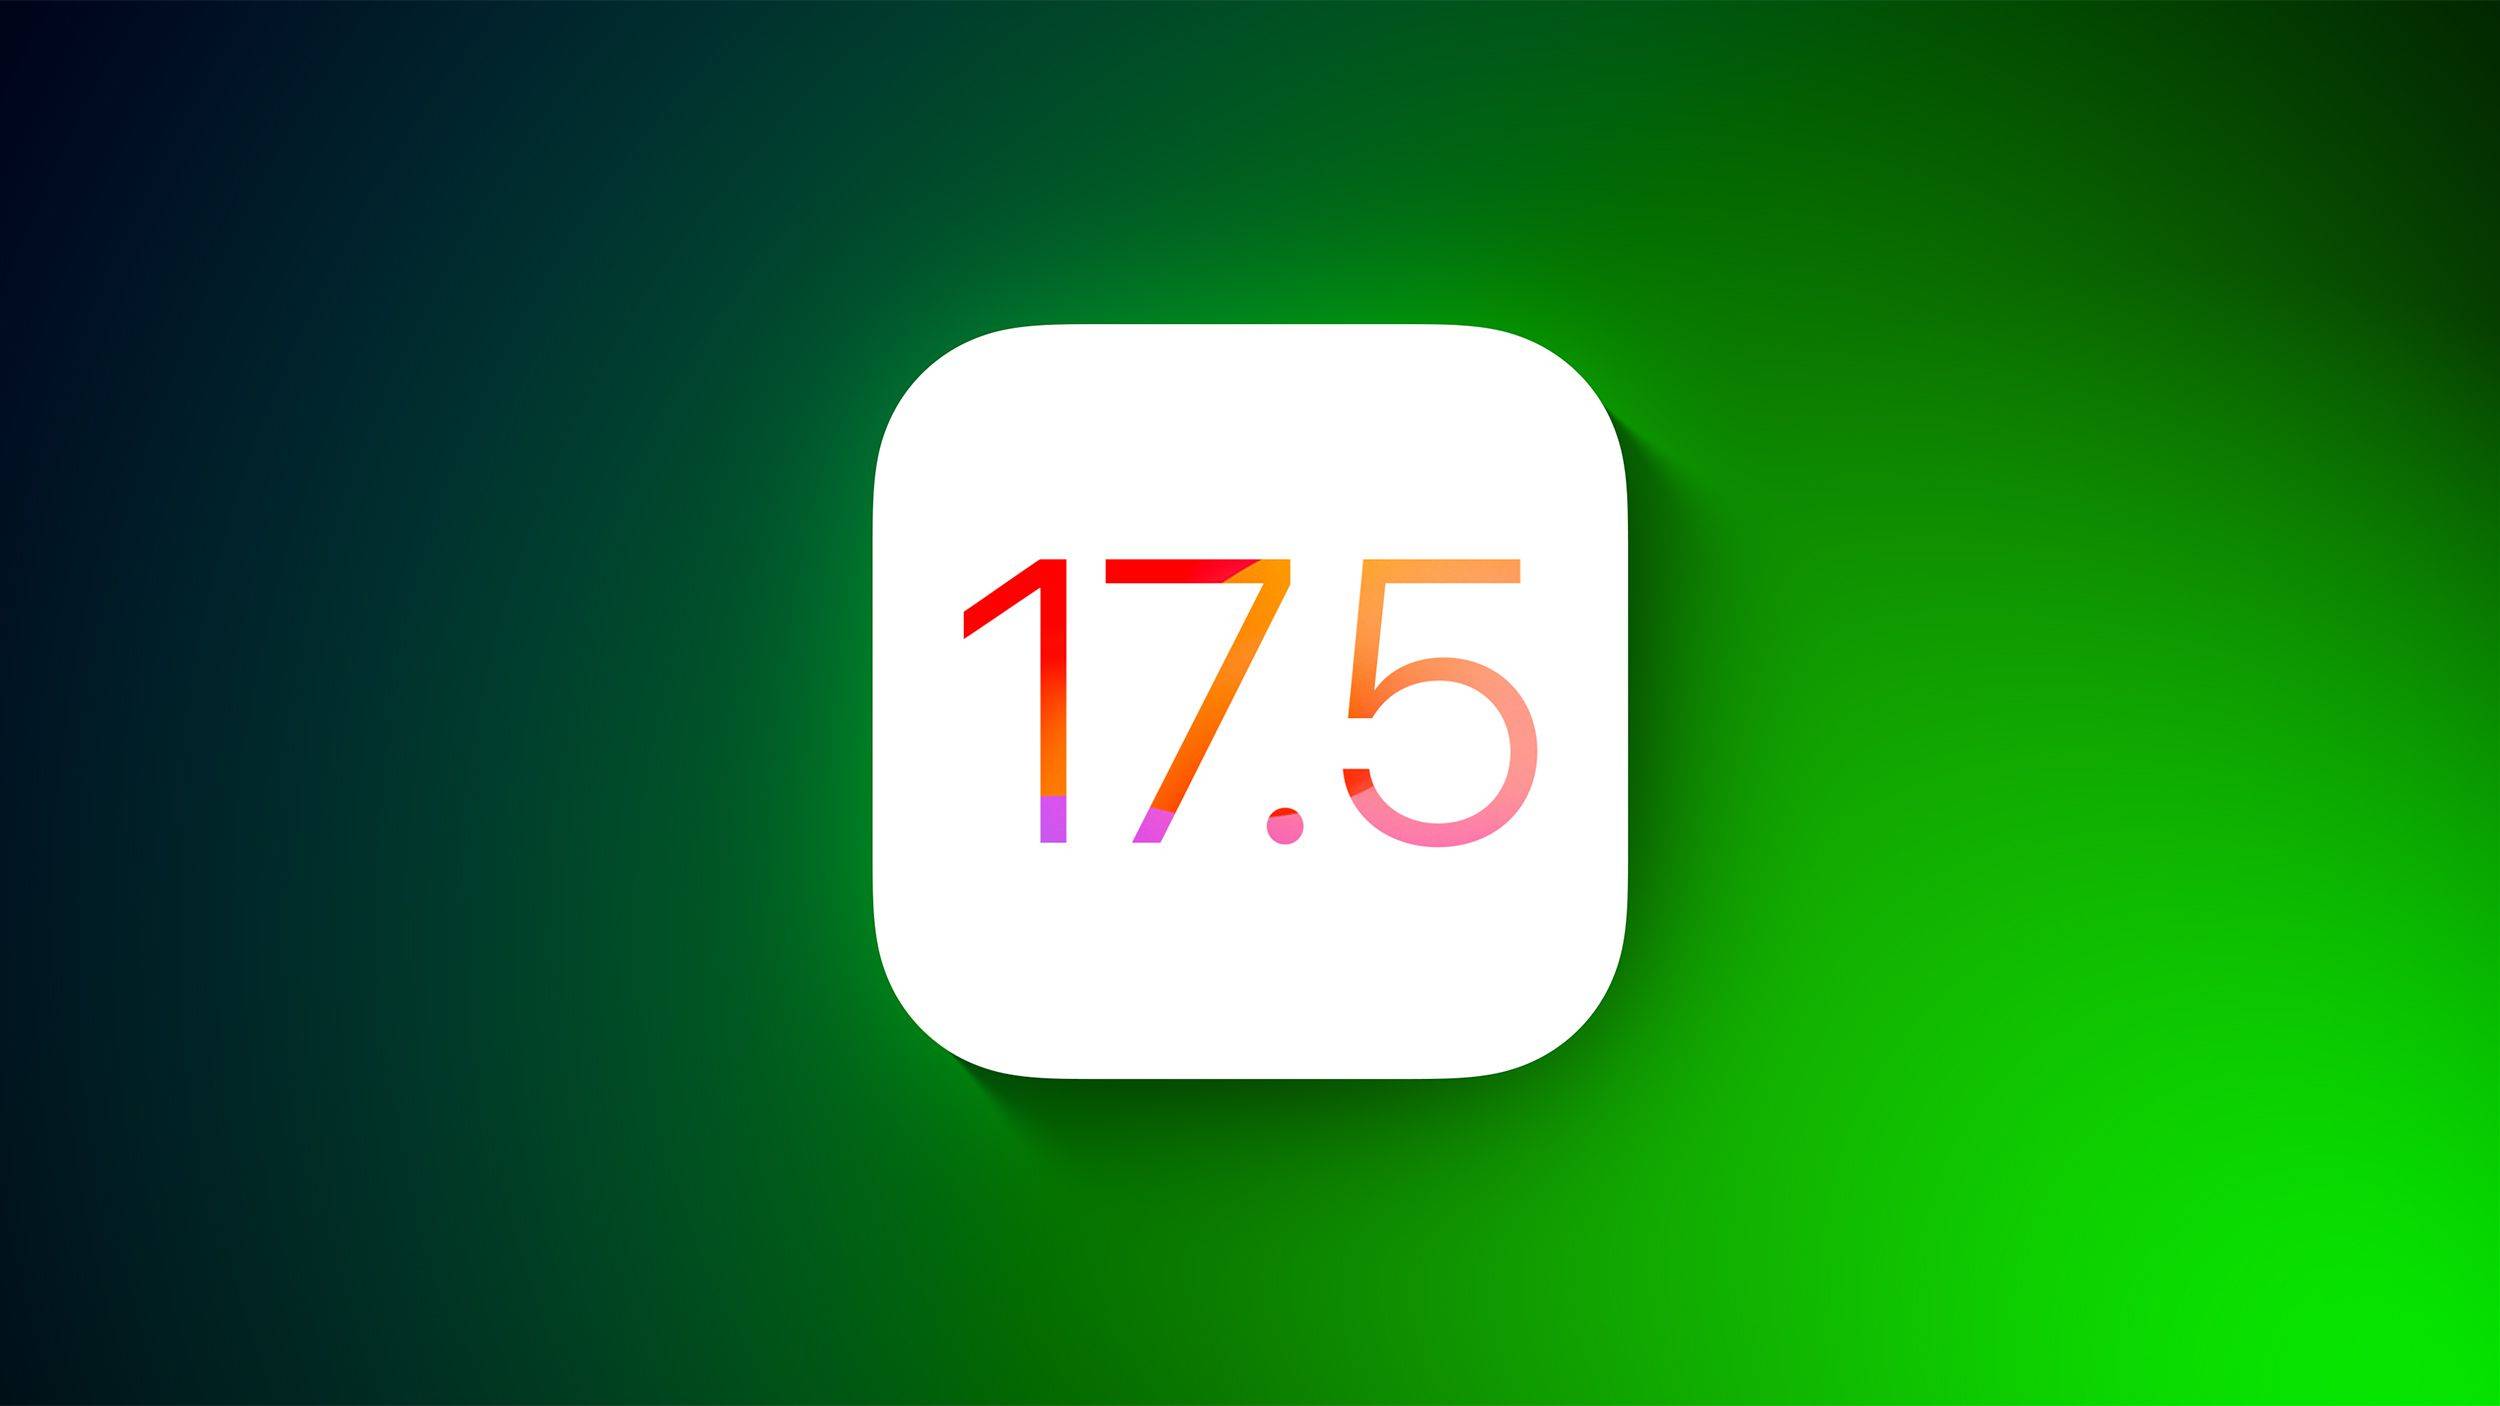 iOS 17.5 apporta modifiche alla cronologia dell'iPad di Apple iPhone